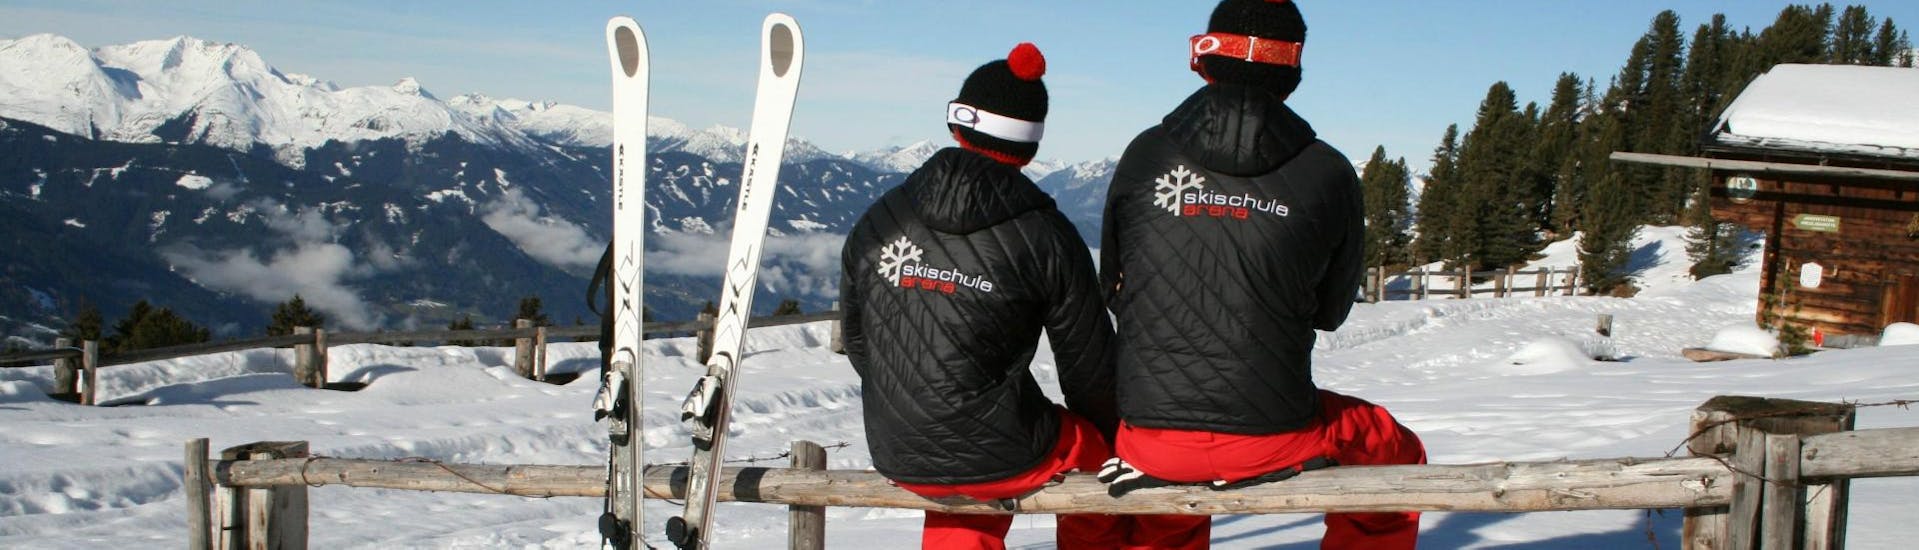 Nach dem Unterricht Skikurs für Erwachsene - Anfänger machen zwei Skilehrer der Skischule Arena in Zell am Ziller eine Pause und genießen die herrliche Aussicht auf die verschneite Berge.